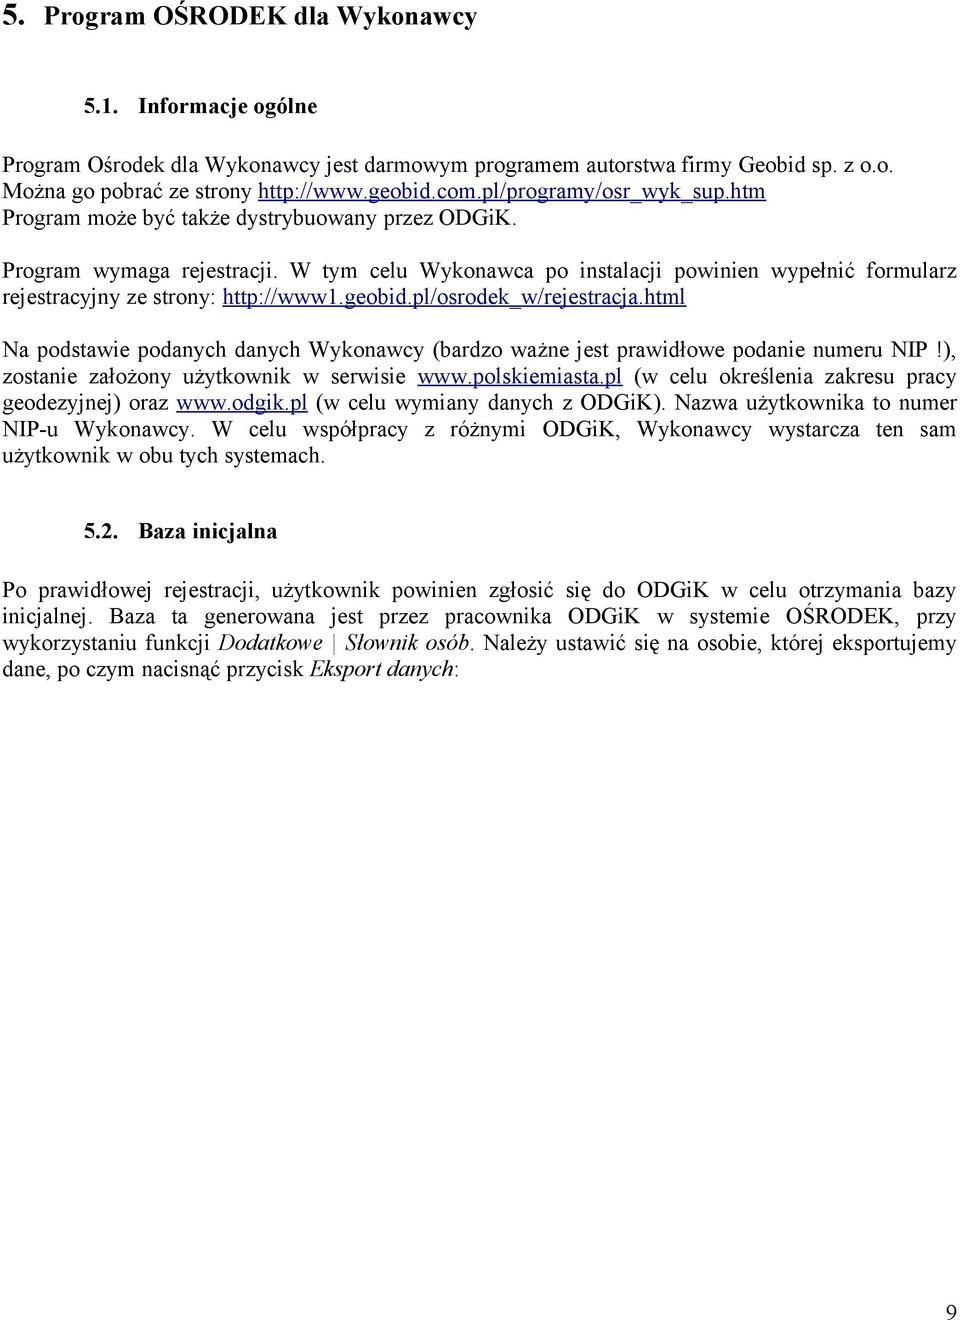 W tym celu Wykonawca po instalacji powinien wypełnić formularz rejestracyjny ze strony: http://www1.geobid.pl/osrodek_w/rejestracja.